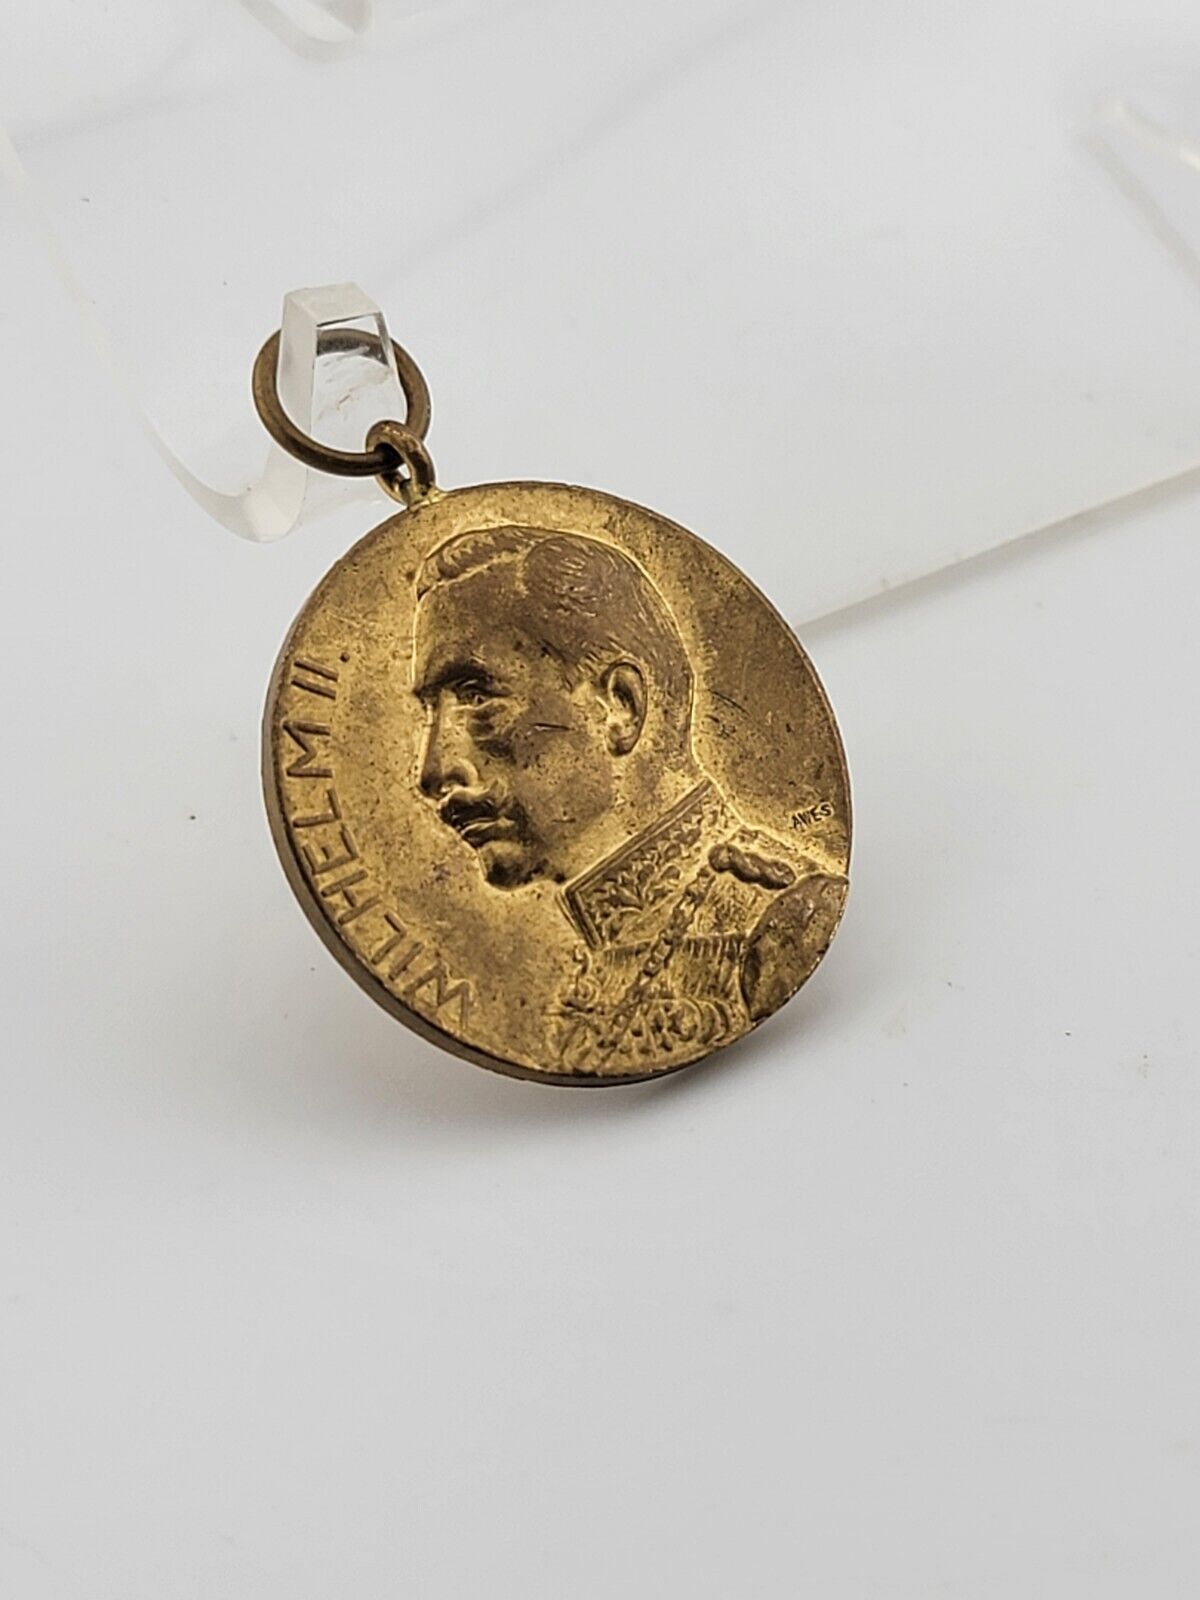 Commemorative German Prussian WW1 Medal 100 Years Göttingen 1813 - 1913